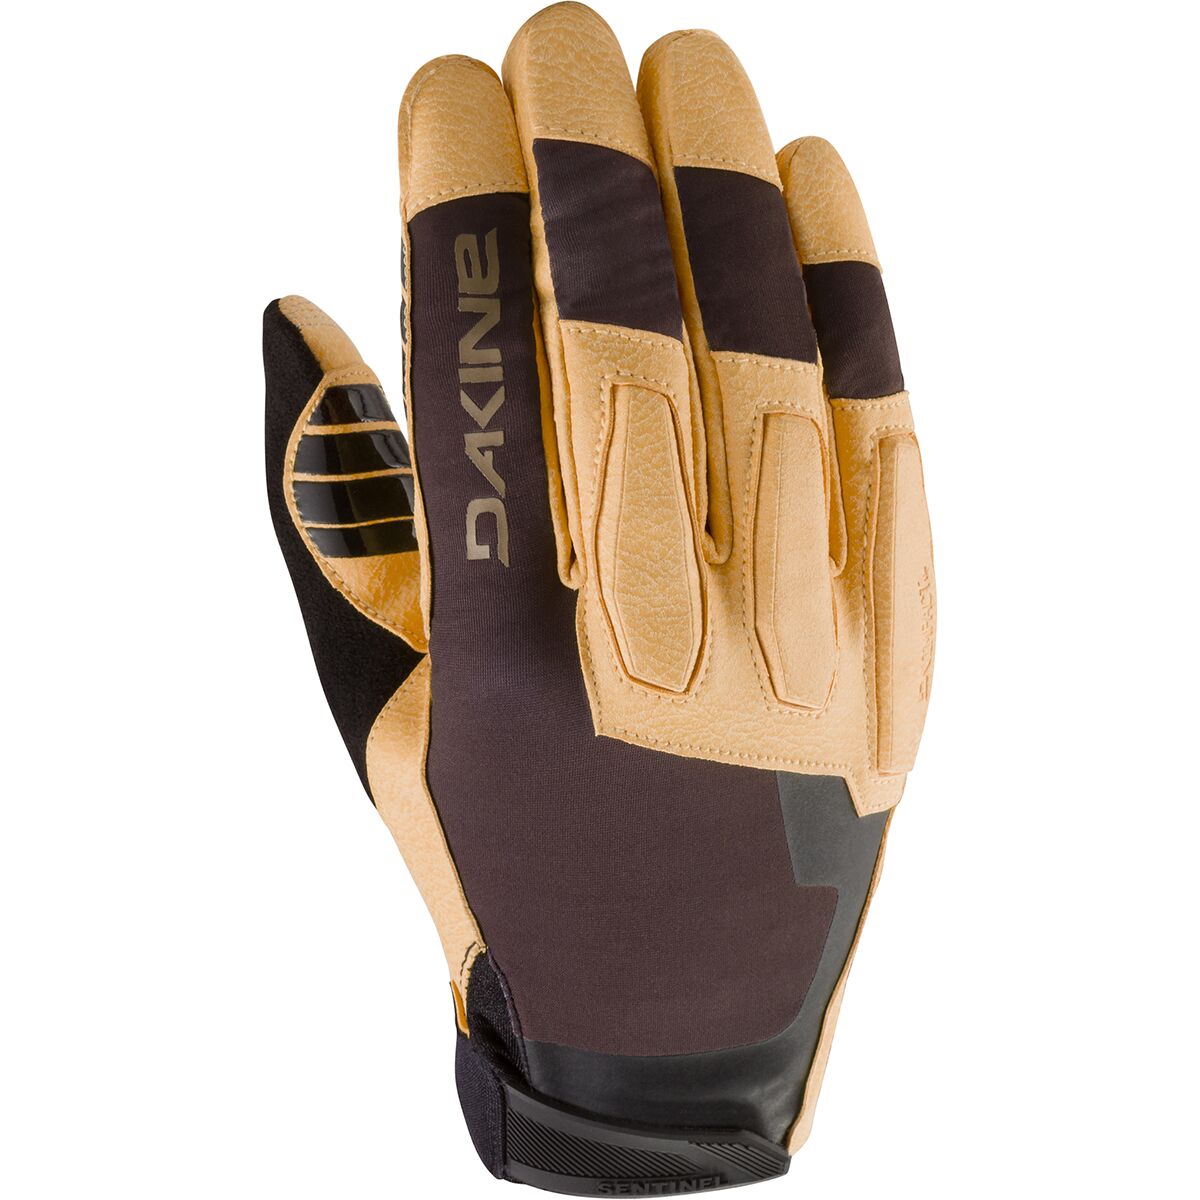 DAKINE Sentinel Glove - Men's